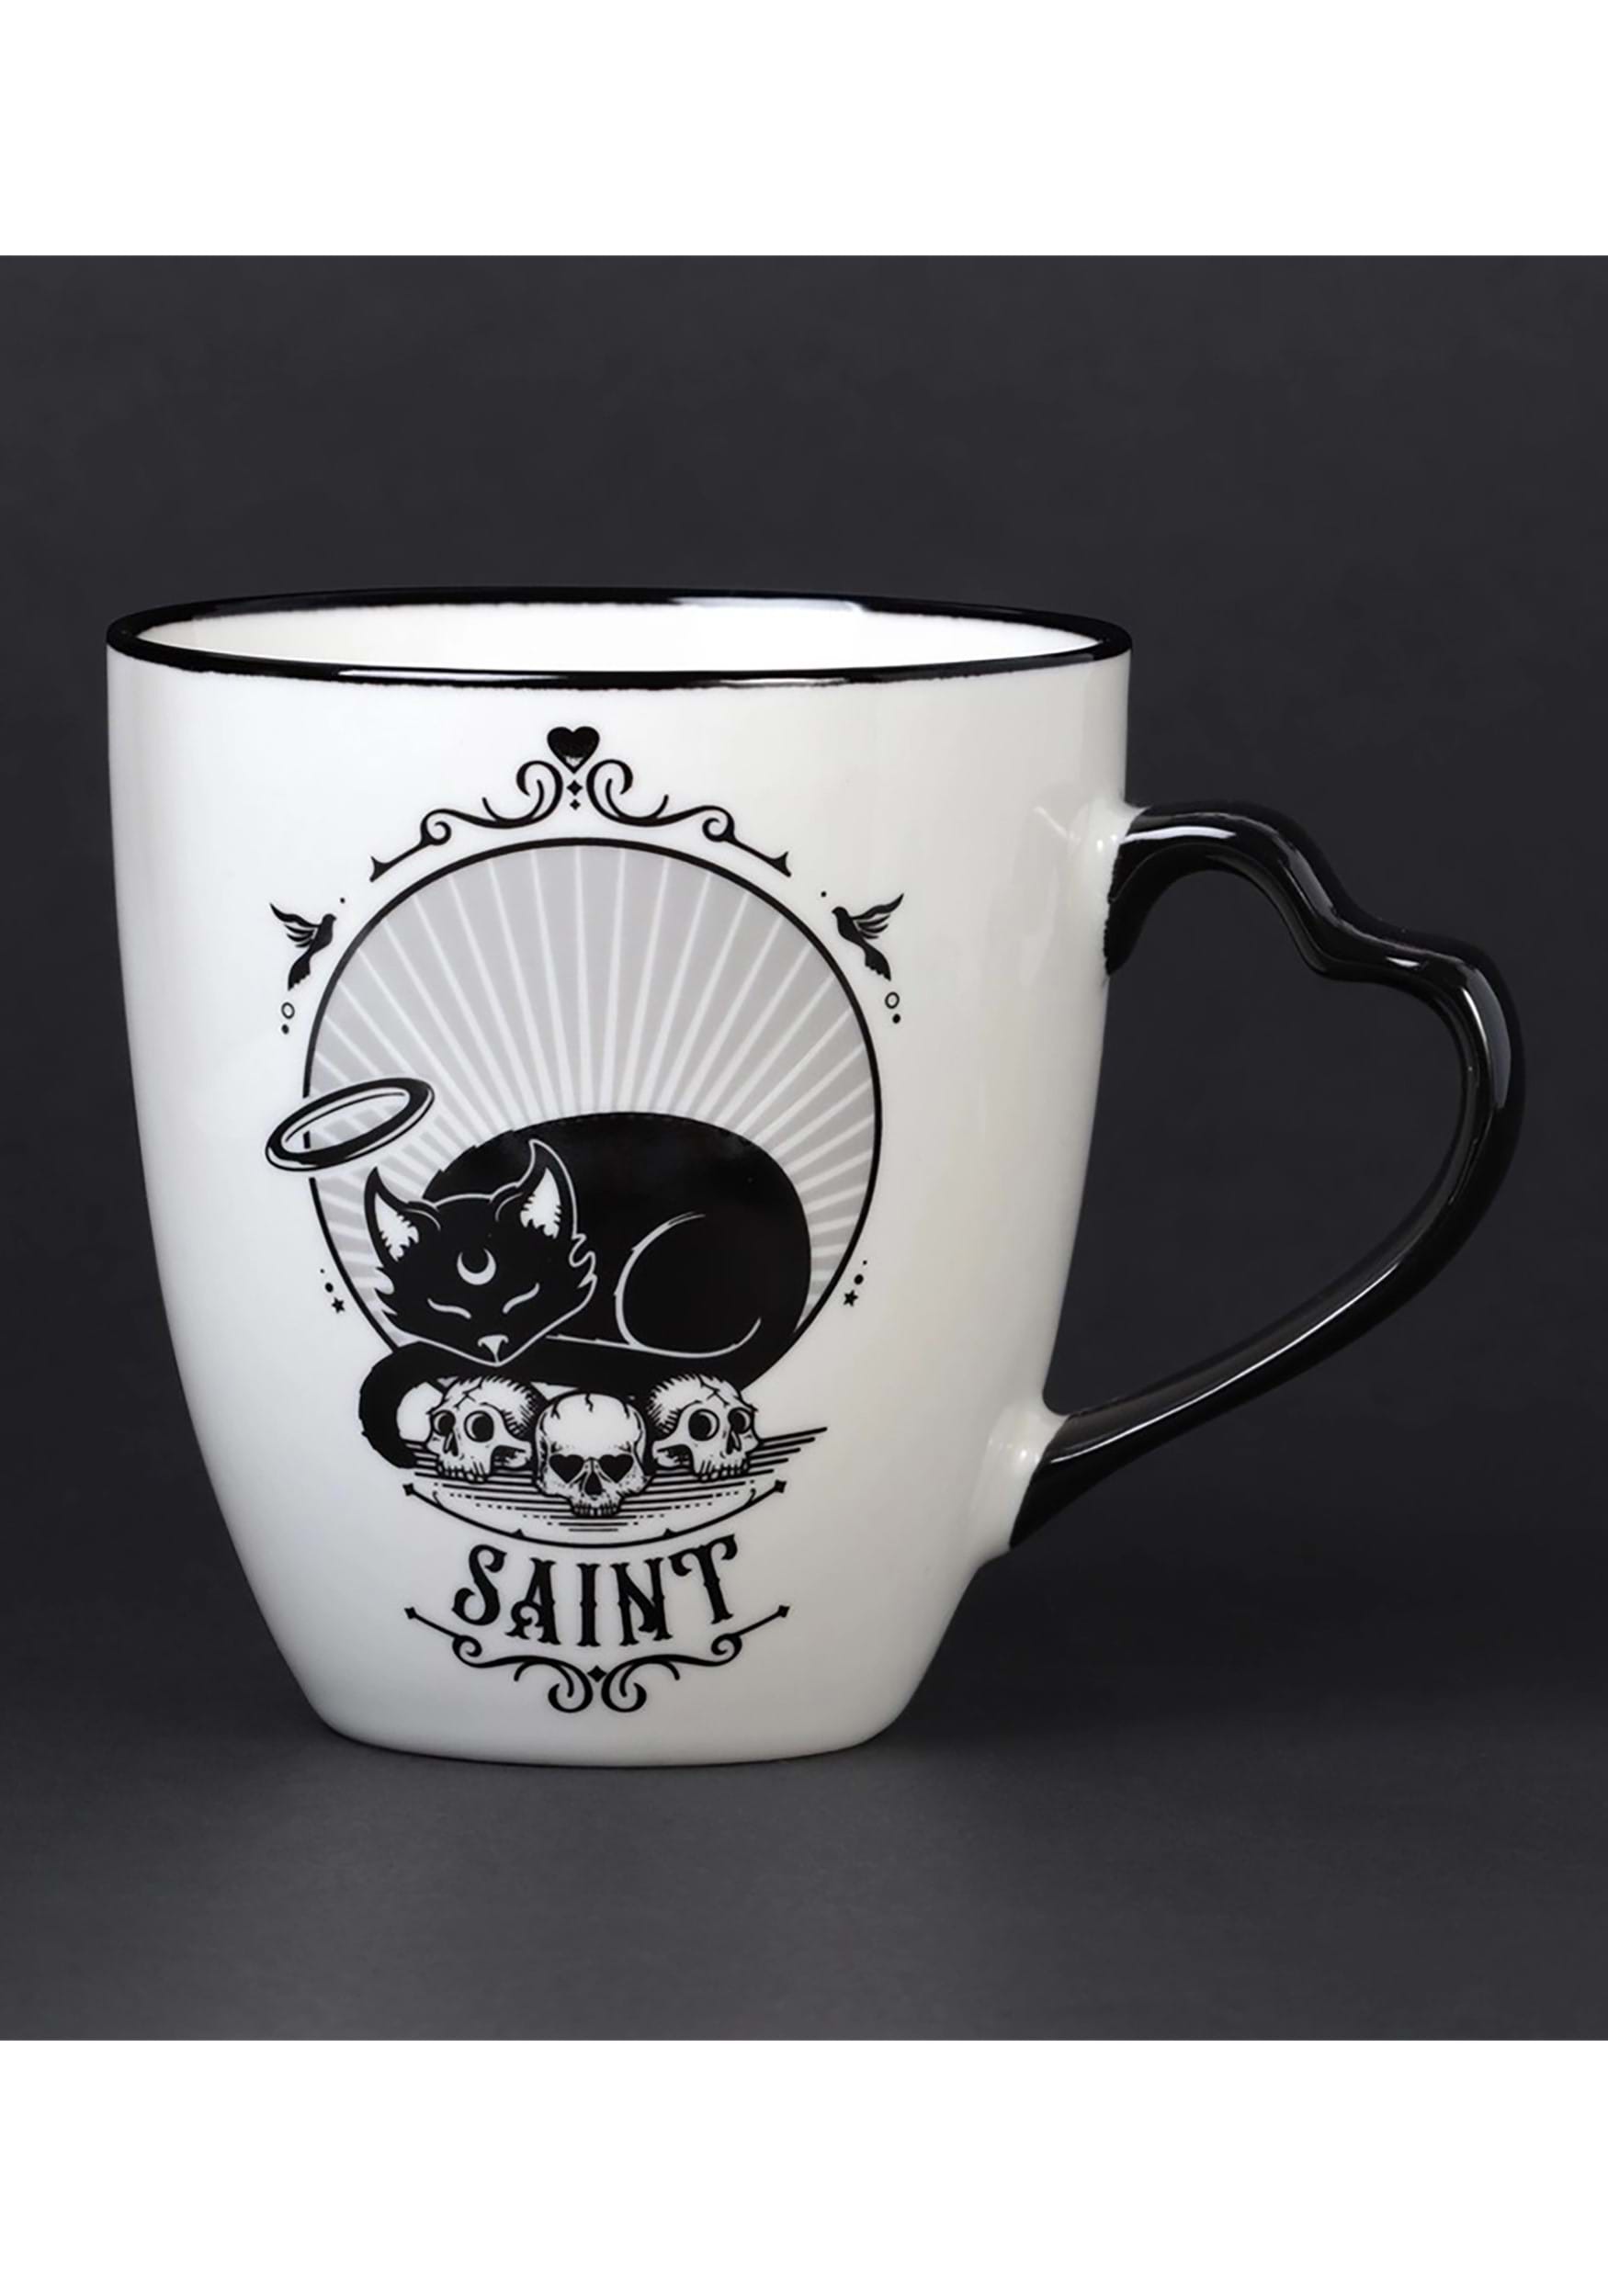 Saint & Sinner Coffee Mug Set